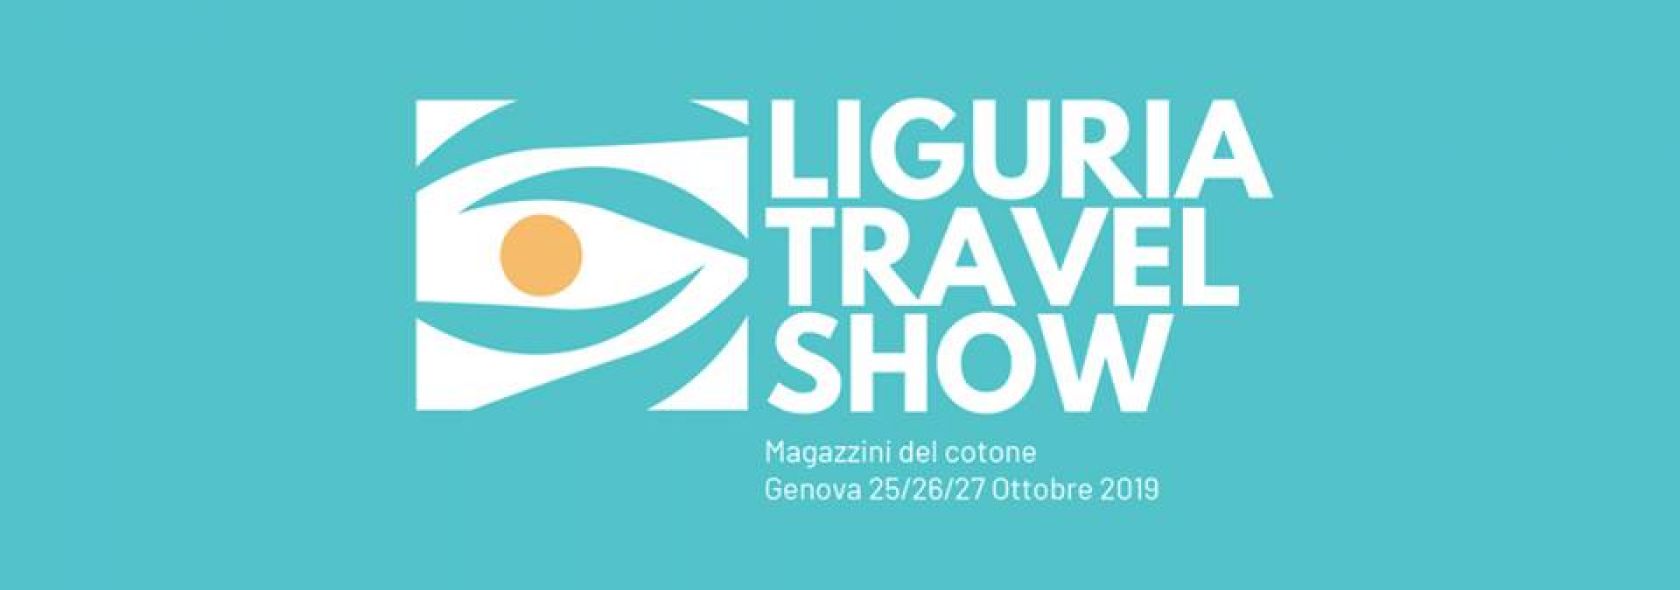 liguria-travel-show